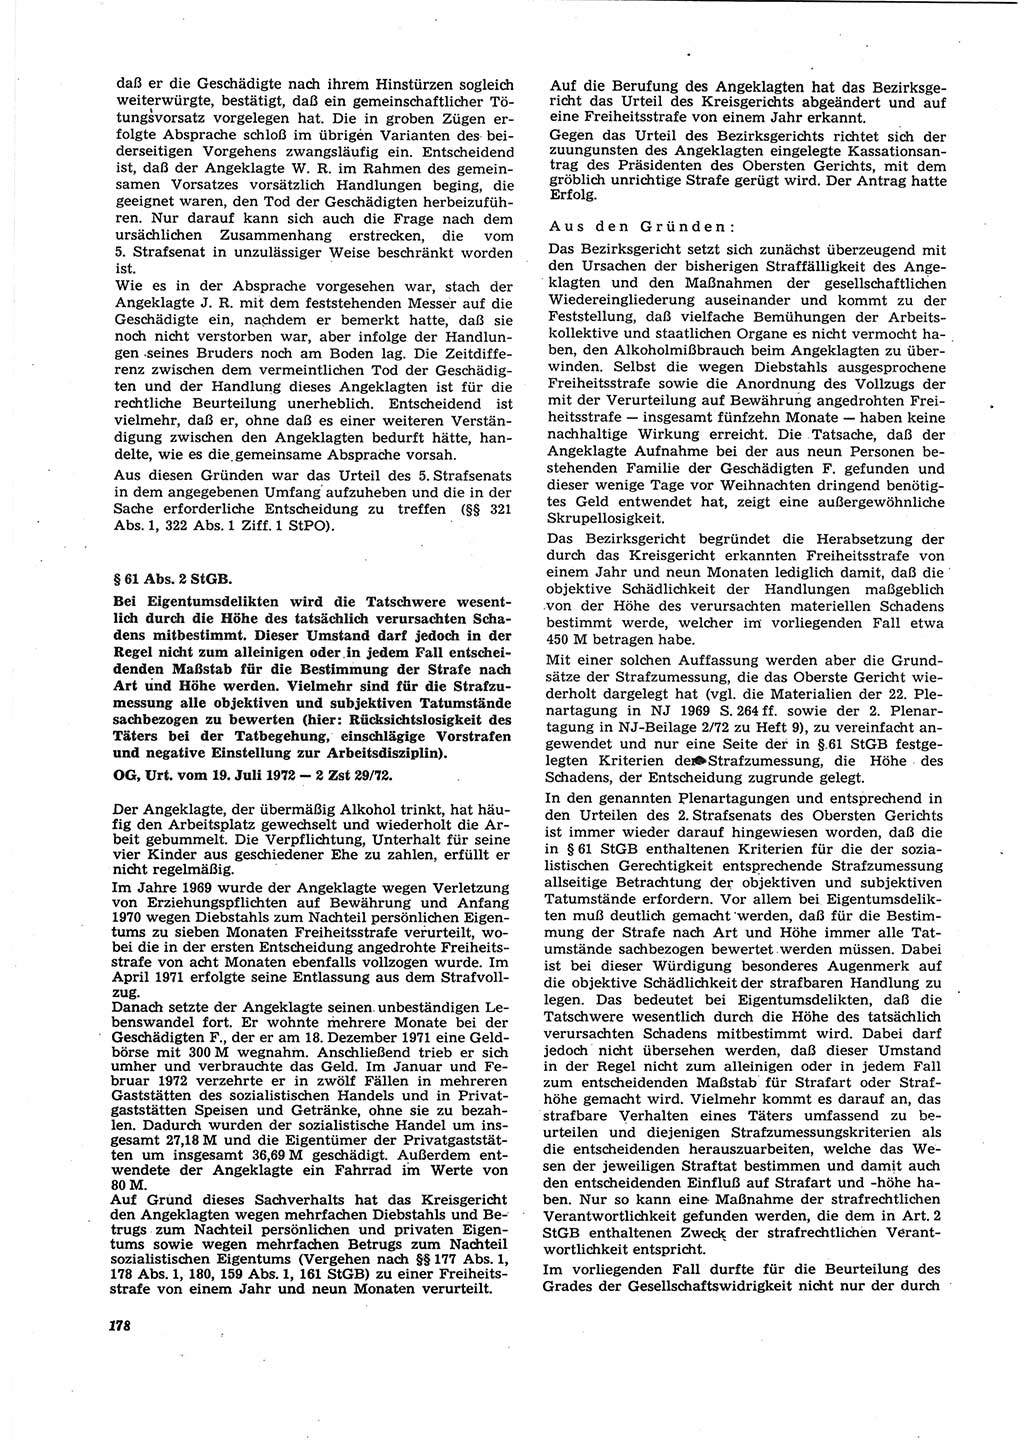 Neue Justiz (NJ), Zeitschrift für Recht und Rechtswissenschaft [Deutsche Demokratische Republik (DDR)], 27. Jahrgang 1973, Seite 178 (NJ DDR 1973, S. 178)